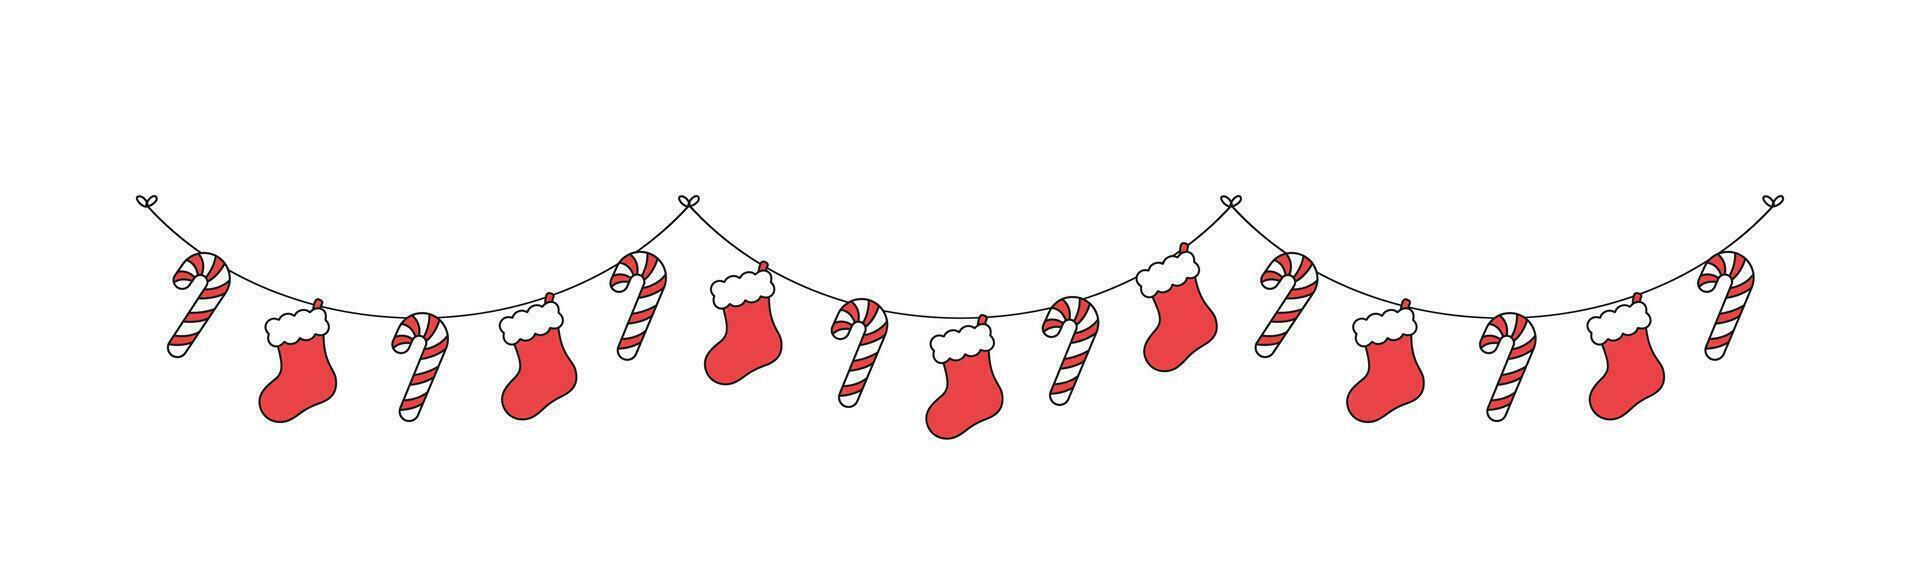 Weihnachten Strumpf und Süßigkeiten Stock Girlande Vektor Illustration, Weihnachten Grafik festlich Winter Urlaub Jahreszeit Ammer